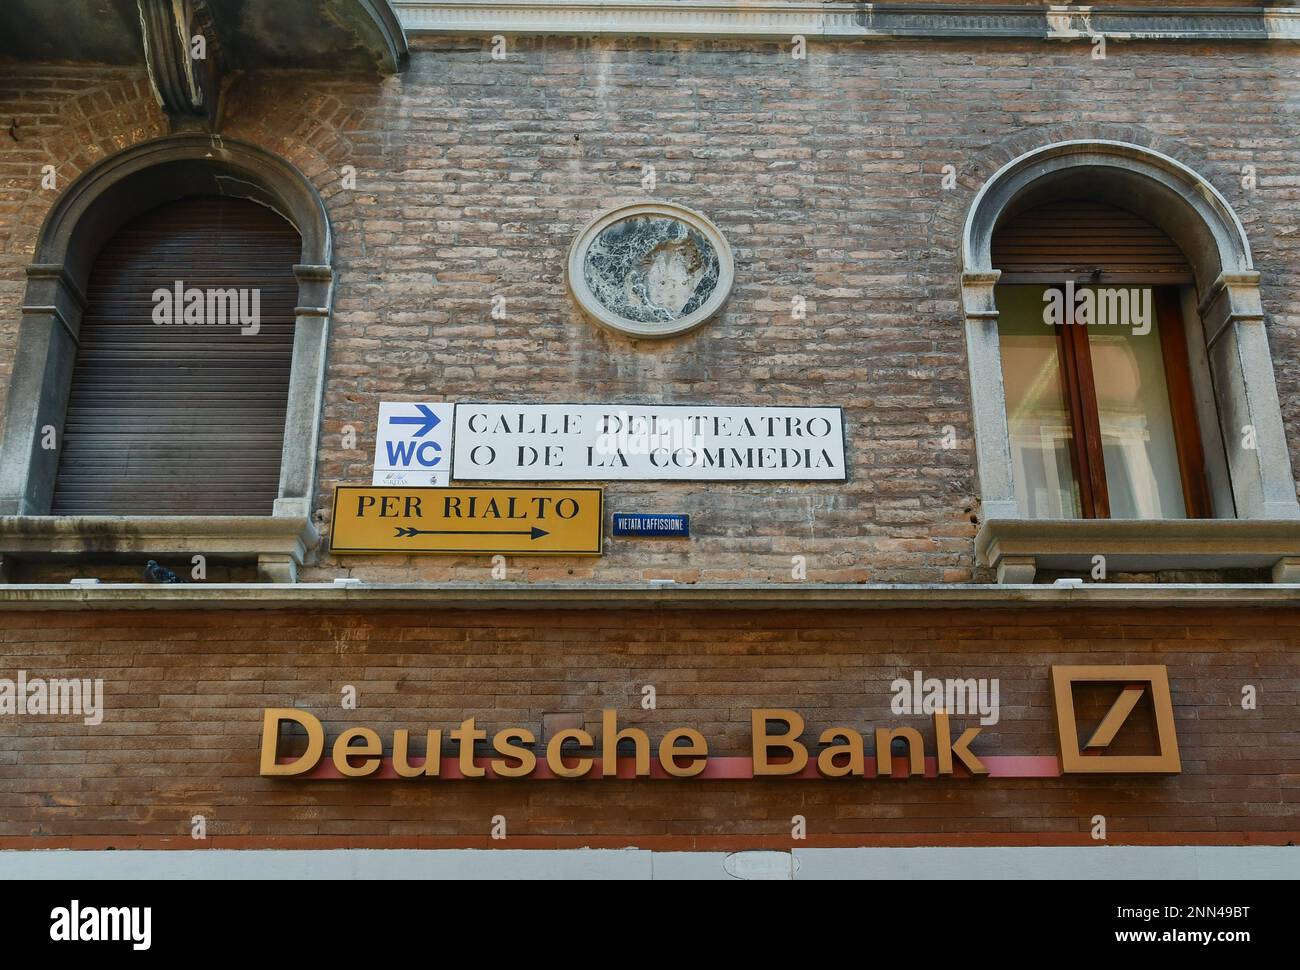 Exterior and sign of the Deutsche Bank in Calle del Teatro o della Commedia in the St Mark's district of Venice, Veneto, Italy Stock Photo